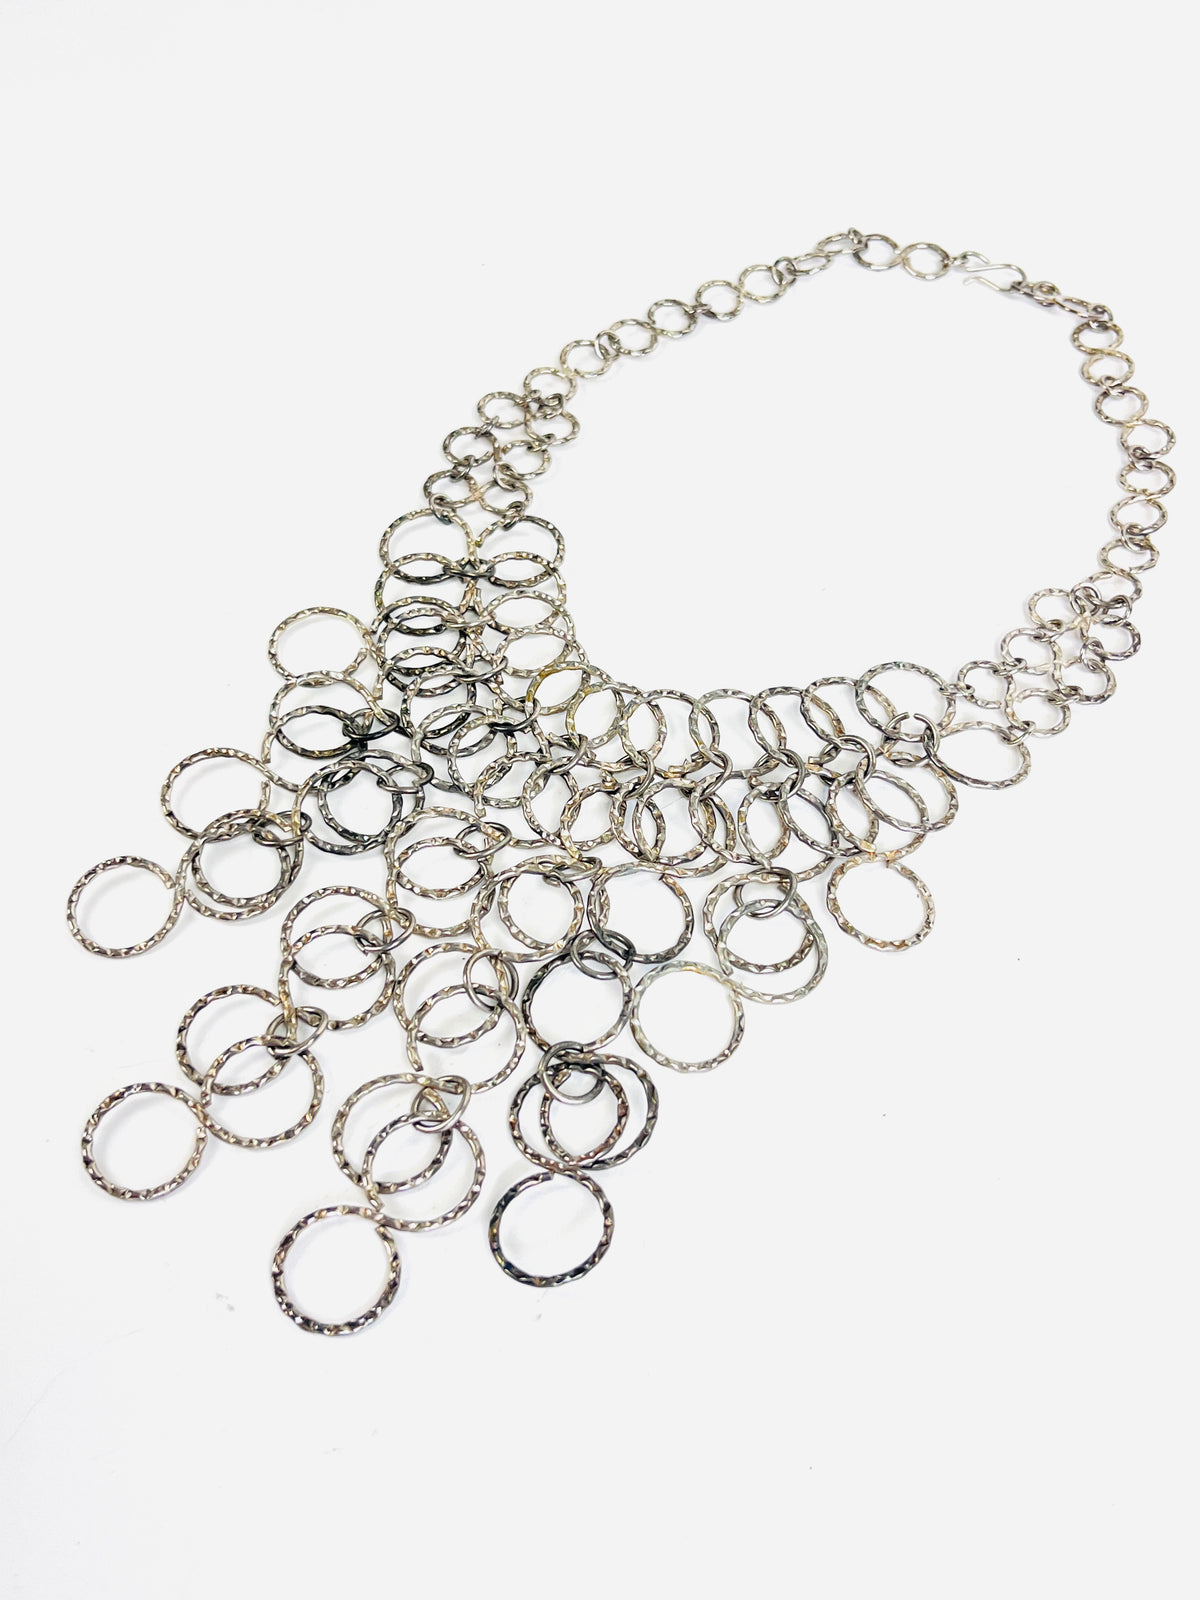 Vintage Silver Tone Bib Necklace